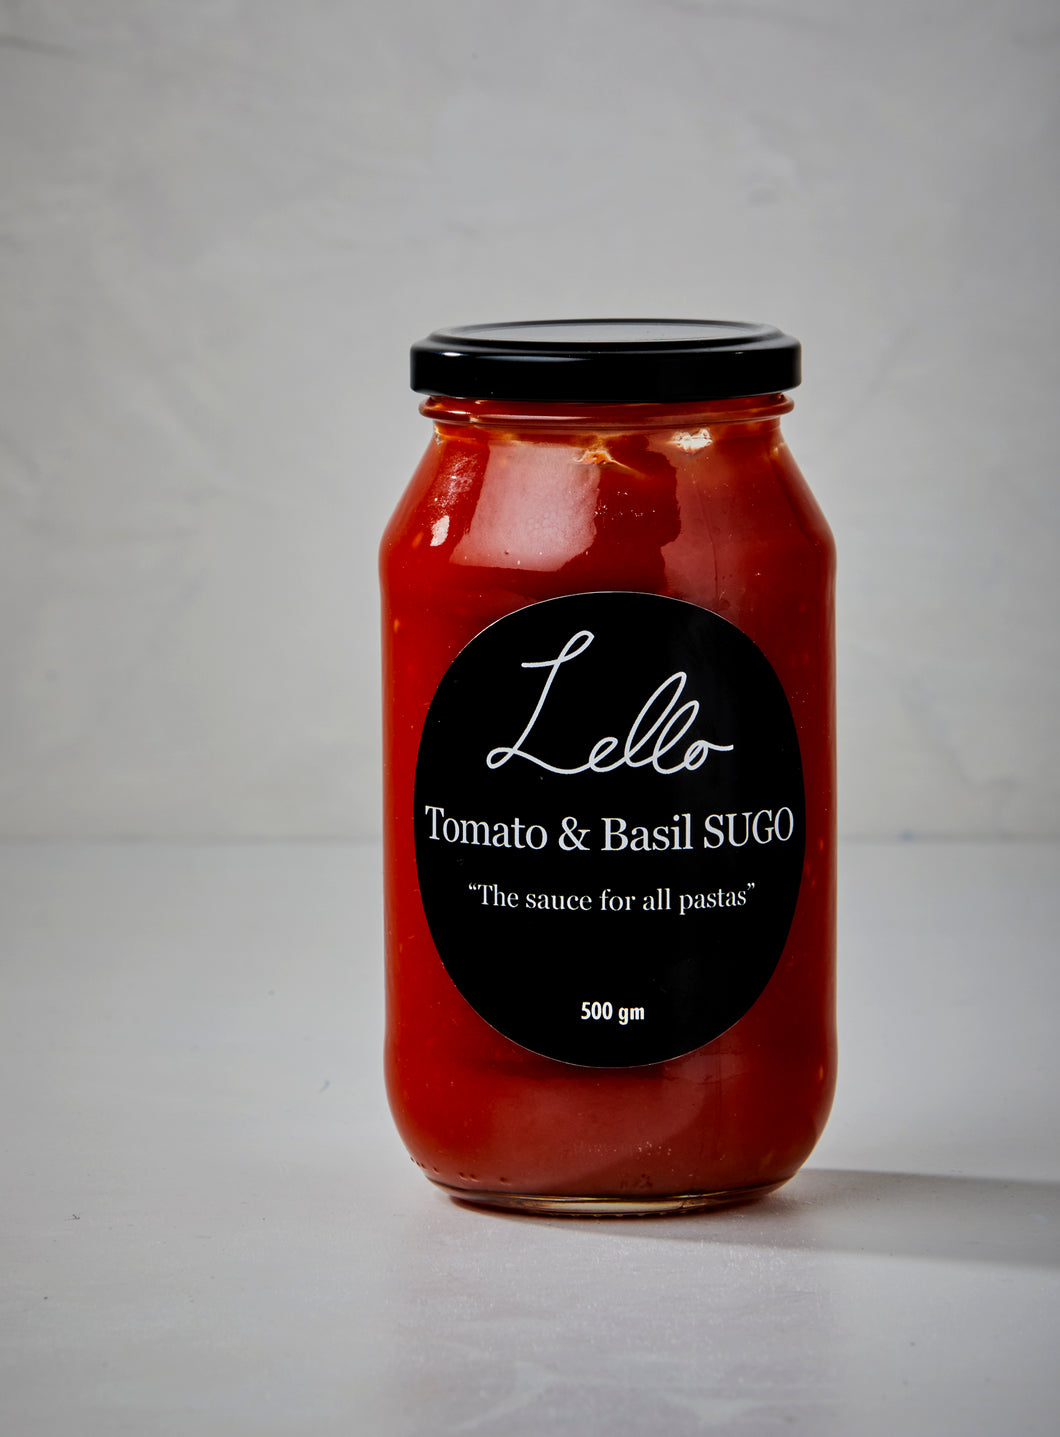 Lello Tomato & Basil Sugo 500g